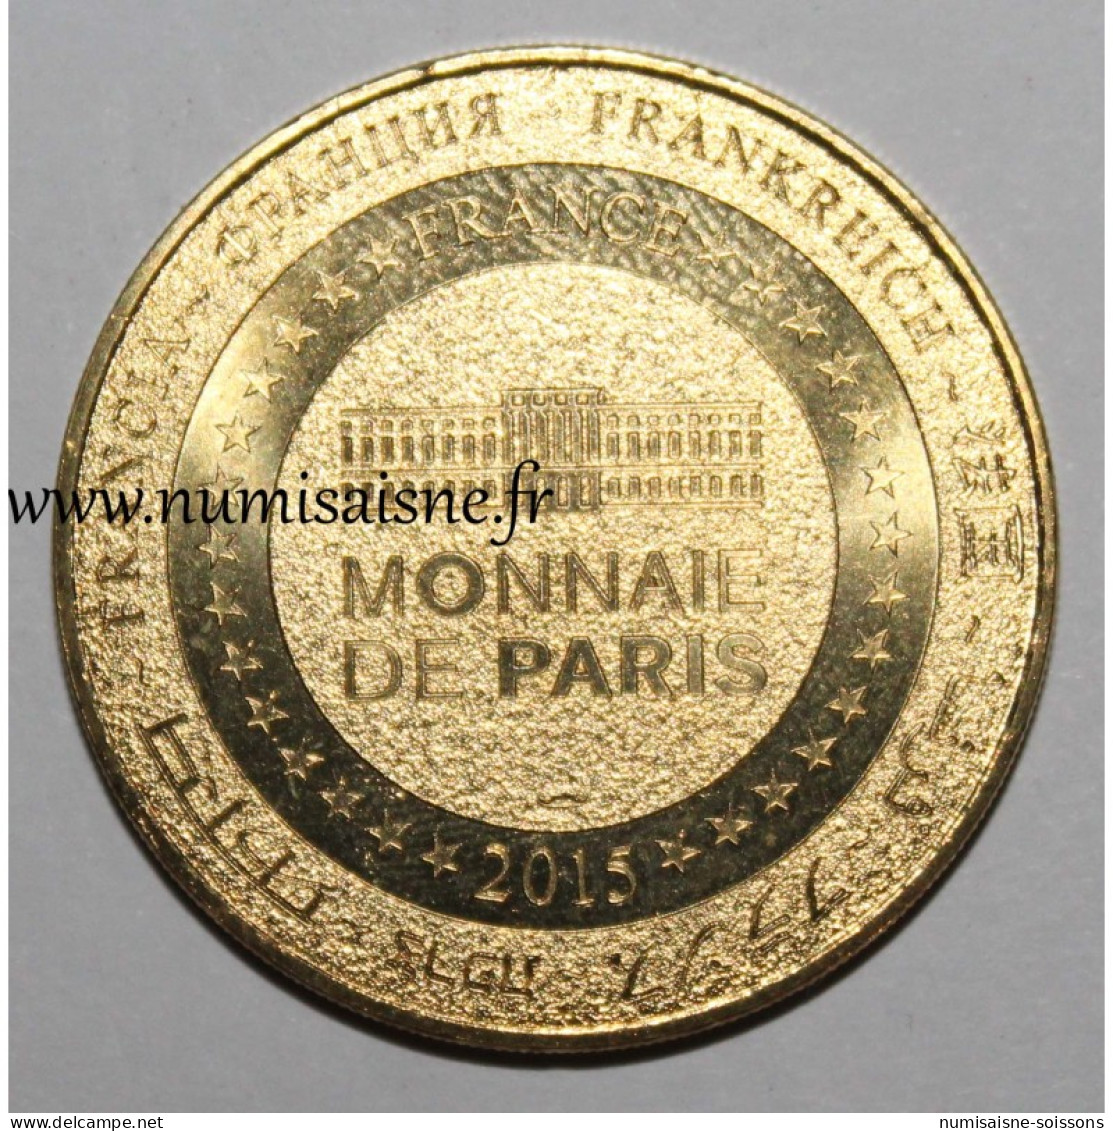 ALLEMAGNE - Kurt Stürken - 80 Ans - LEUCHTTURM - Monnaie De Paris - 2015 - 2015